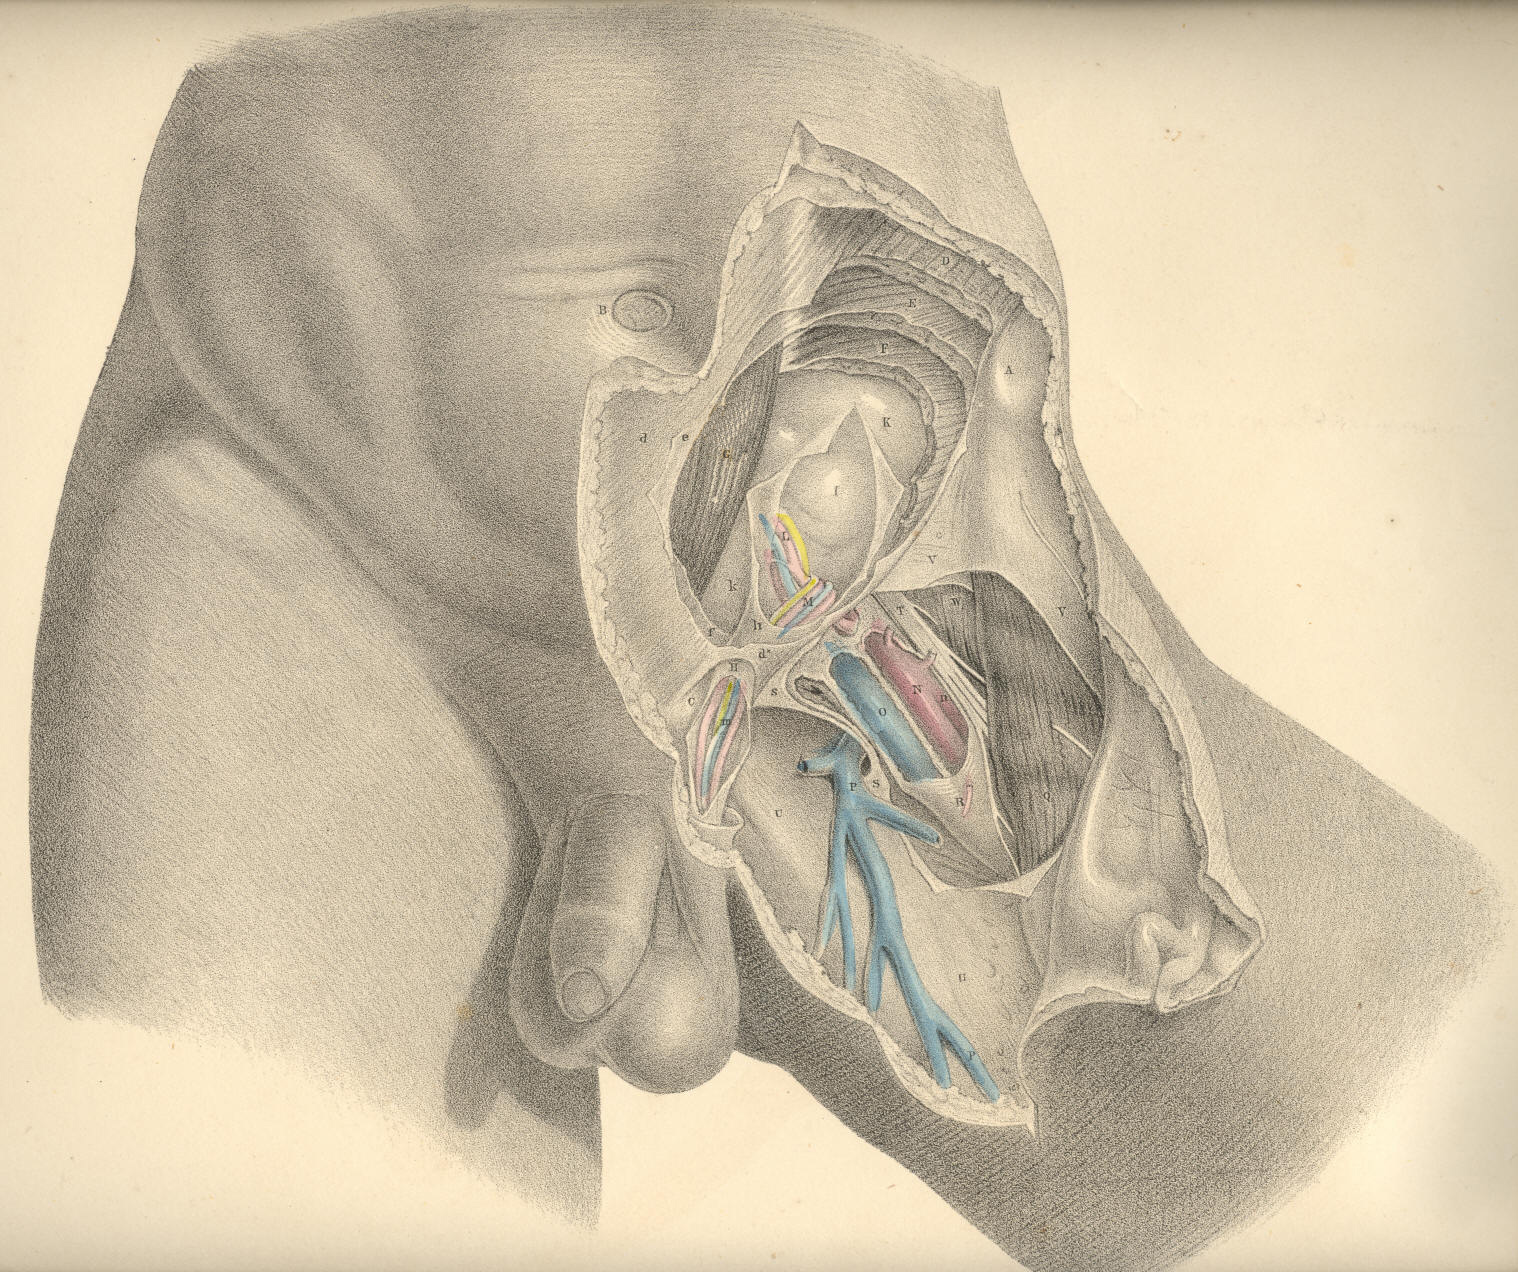 4: Anatomical illustrations: fascia enclosures, e.g., fascia lata